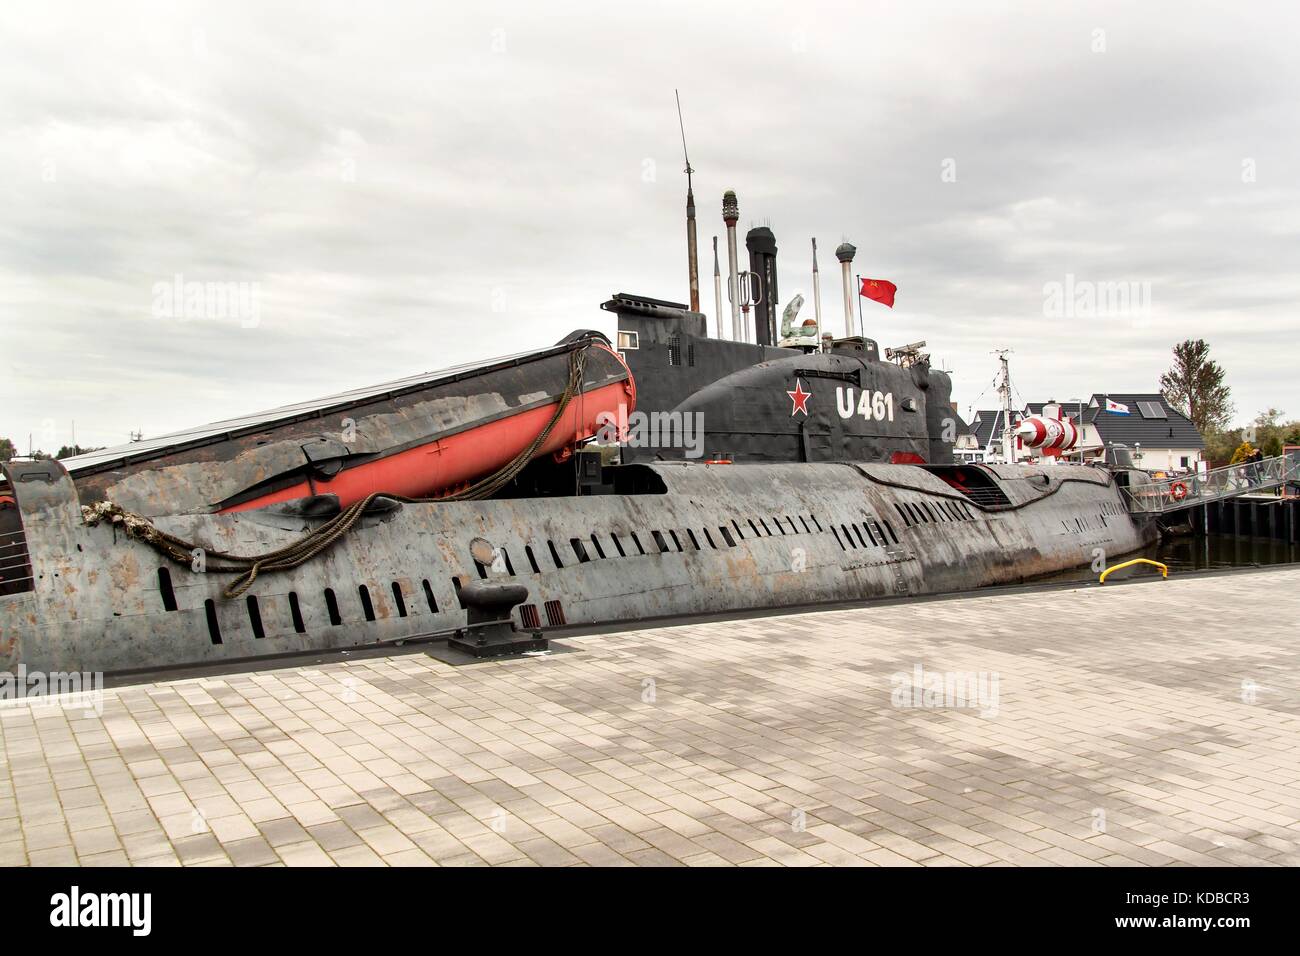 Peenemuende, Germania - 21 settembre 2017: convenzionalmente sottomarino U-461 dell'ex Baltic marina sovietica appartiene alla classe 651. Nella nato c Foto Stock